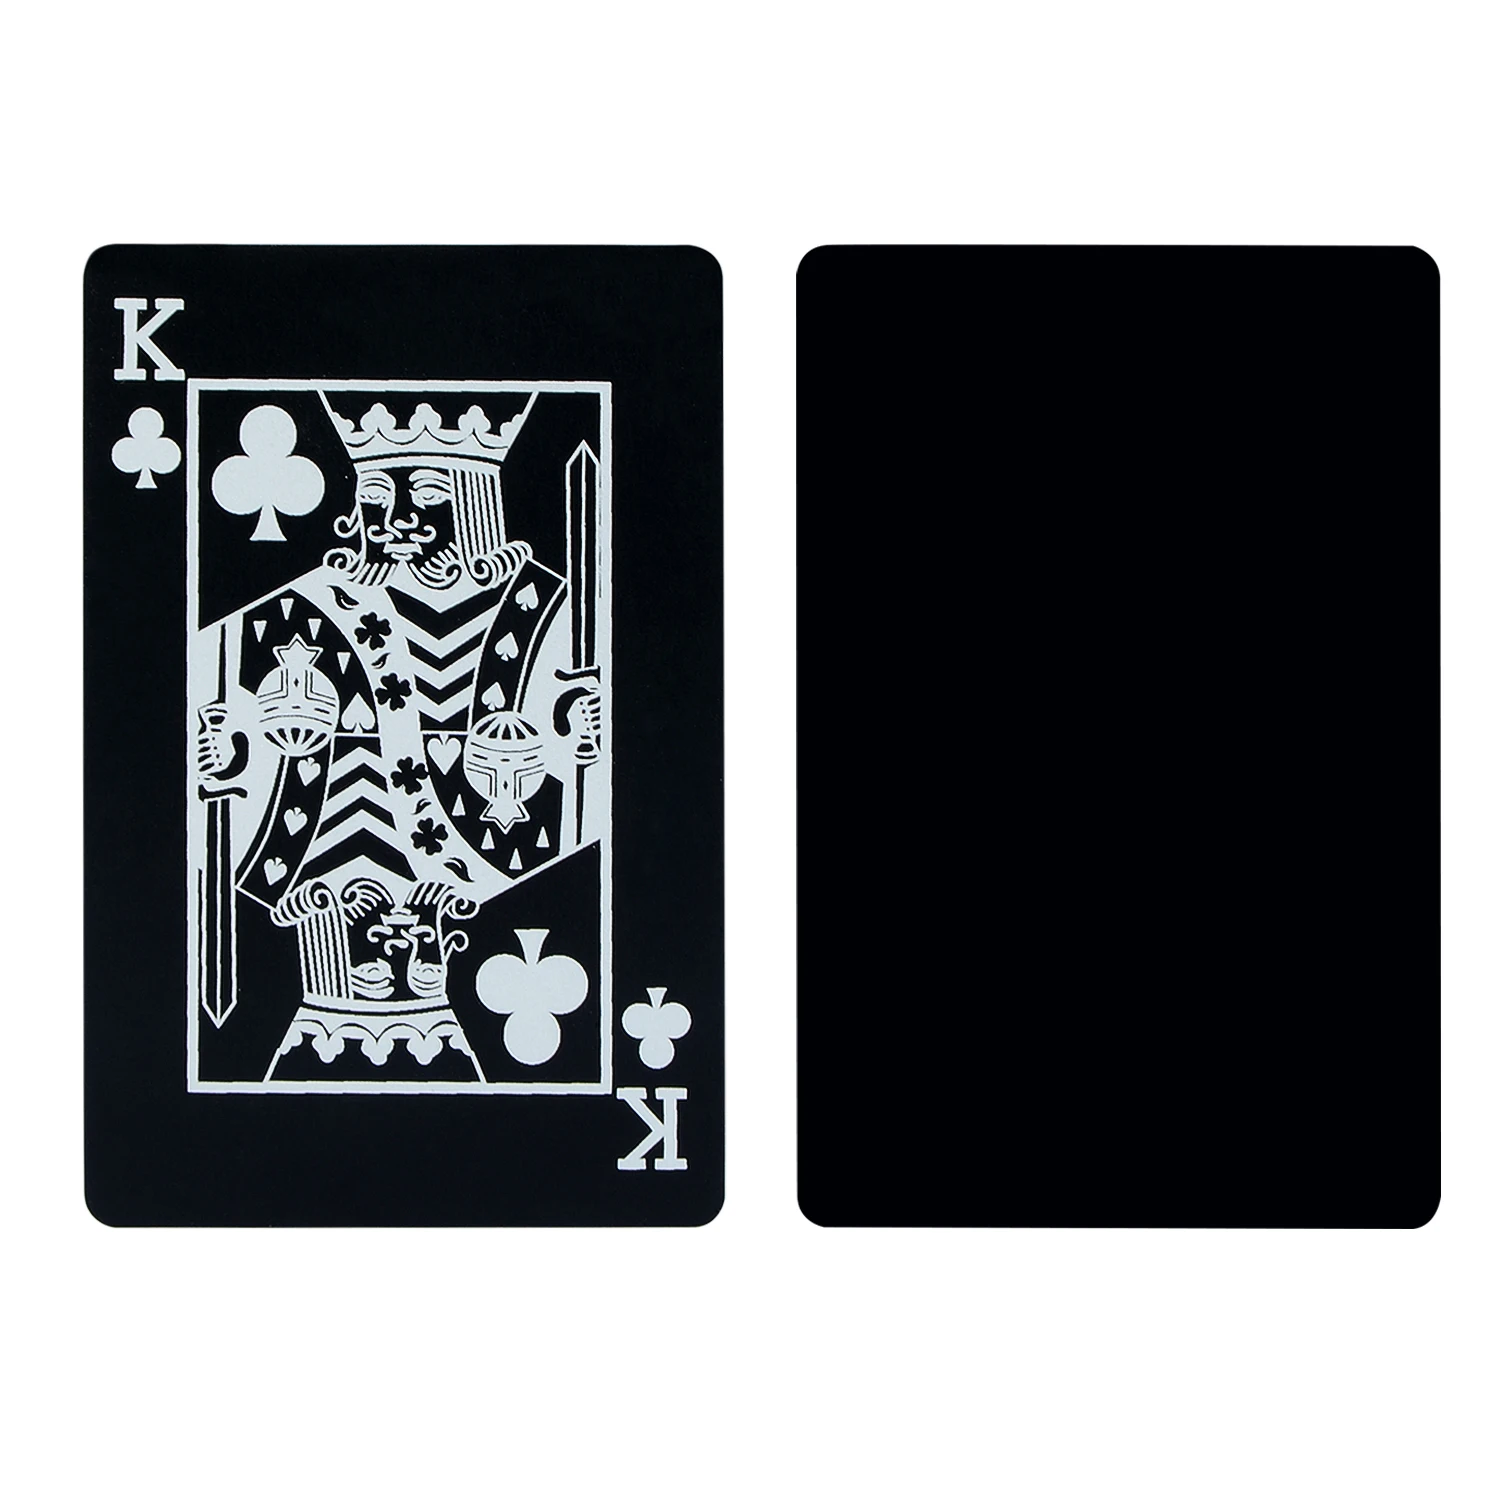 88*63 мм, современные магические трюки, карты для покера, игральные карты, магический реквизит, Магическая колода, подарок, карта для покера, шоу, игровой реквизит